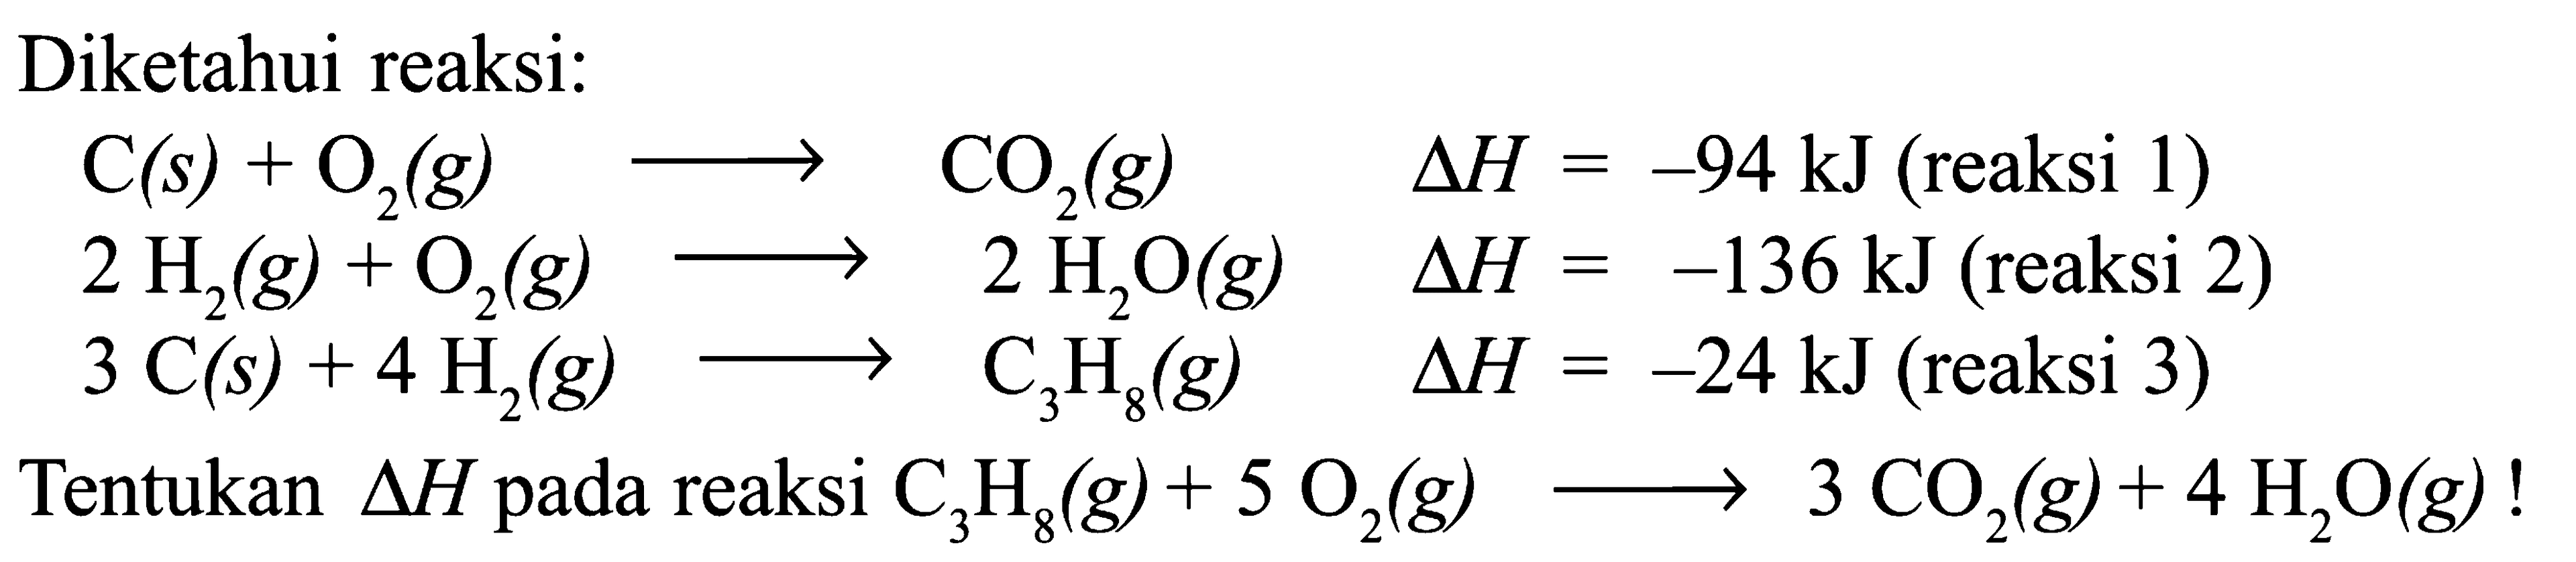 Diketahui reaksi: C(s) + O2(g) -> CO2(g) delta H=-94 kJ (reaksi 1)  2H2(g) + O2(g) -> 2H2O(g) delta H=-136 kJ (reaksi 2)  3C(s) + 4H2(g) -> C3H8(g) delta H=-24 kJ (reaksi 3) Tentukan segitiga H pada reaksi C3H8(g) + 5O2(g) -> 3CO2(g) + 4H2O(g)! 